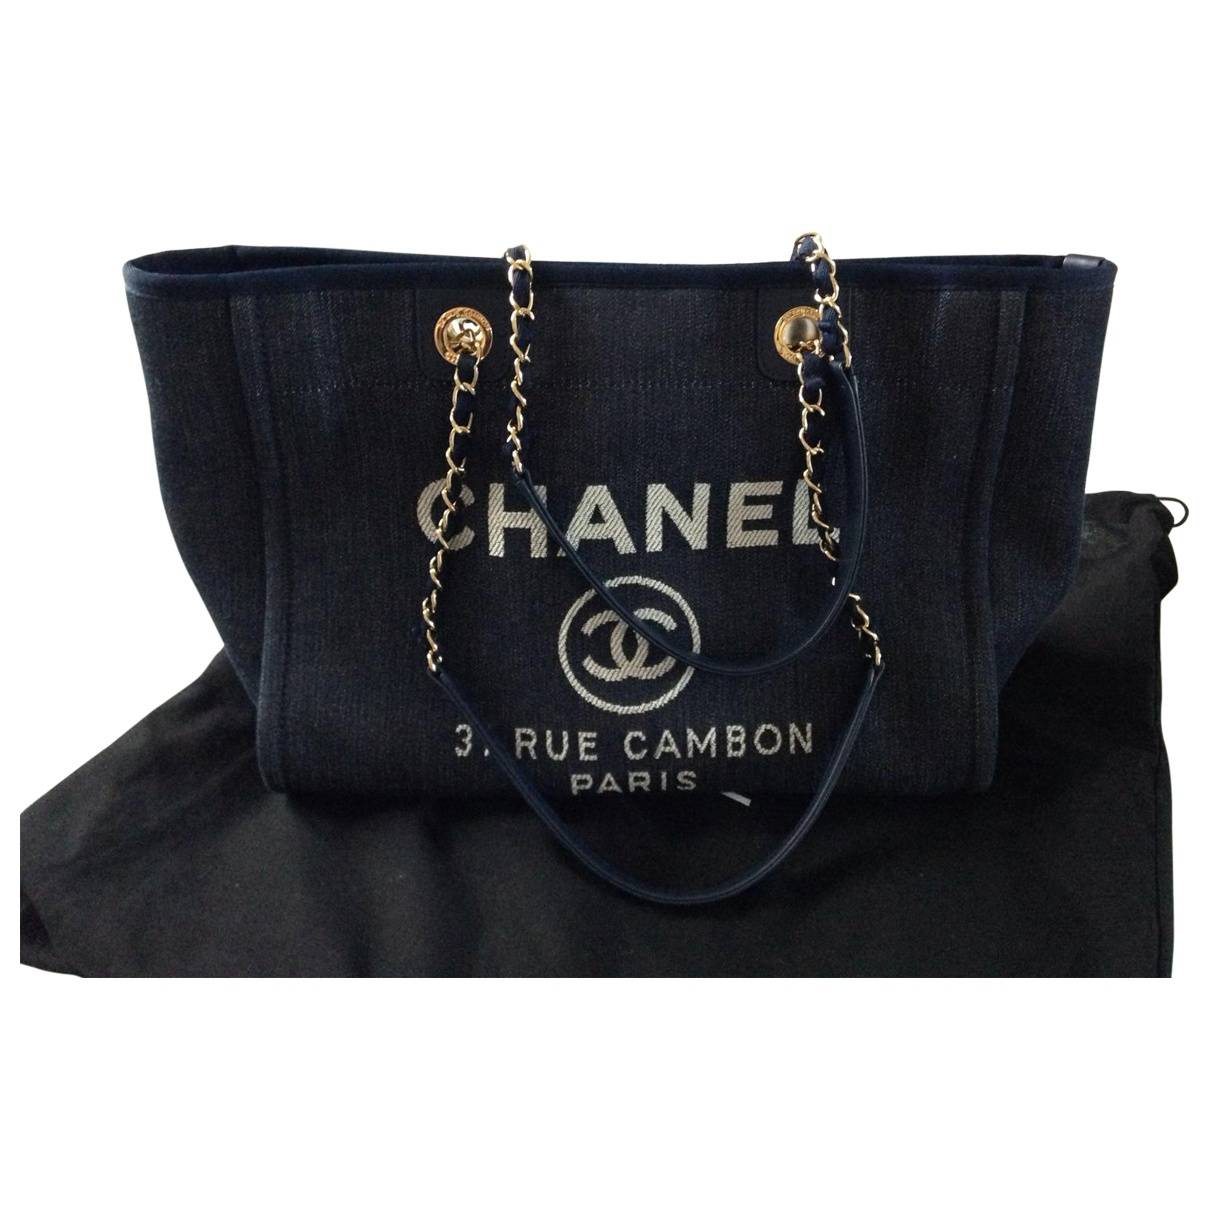 Chanel 31 Rue Cambon Bag